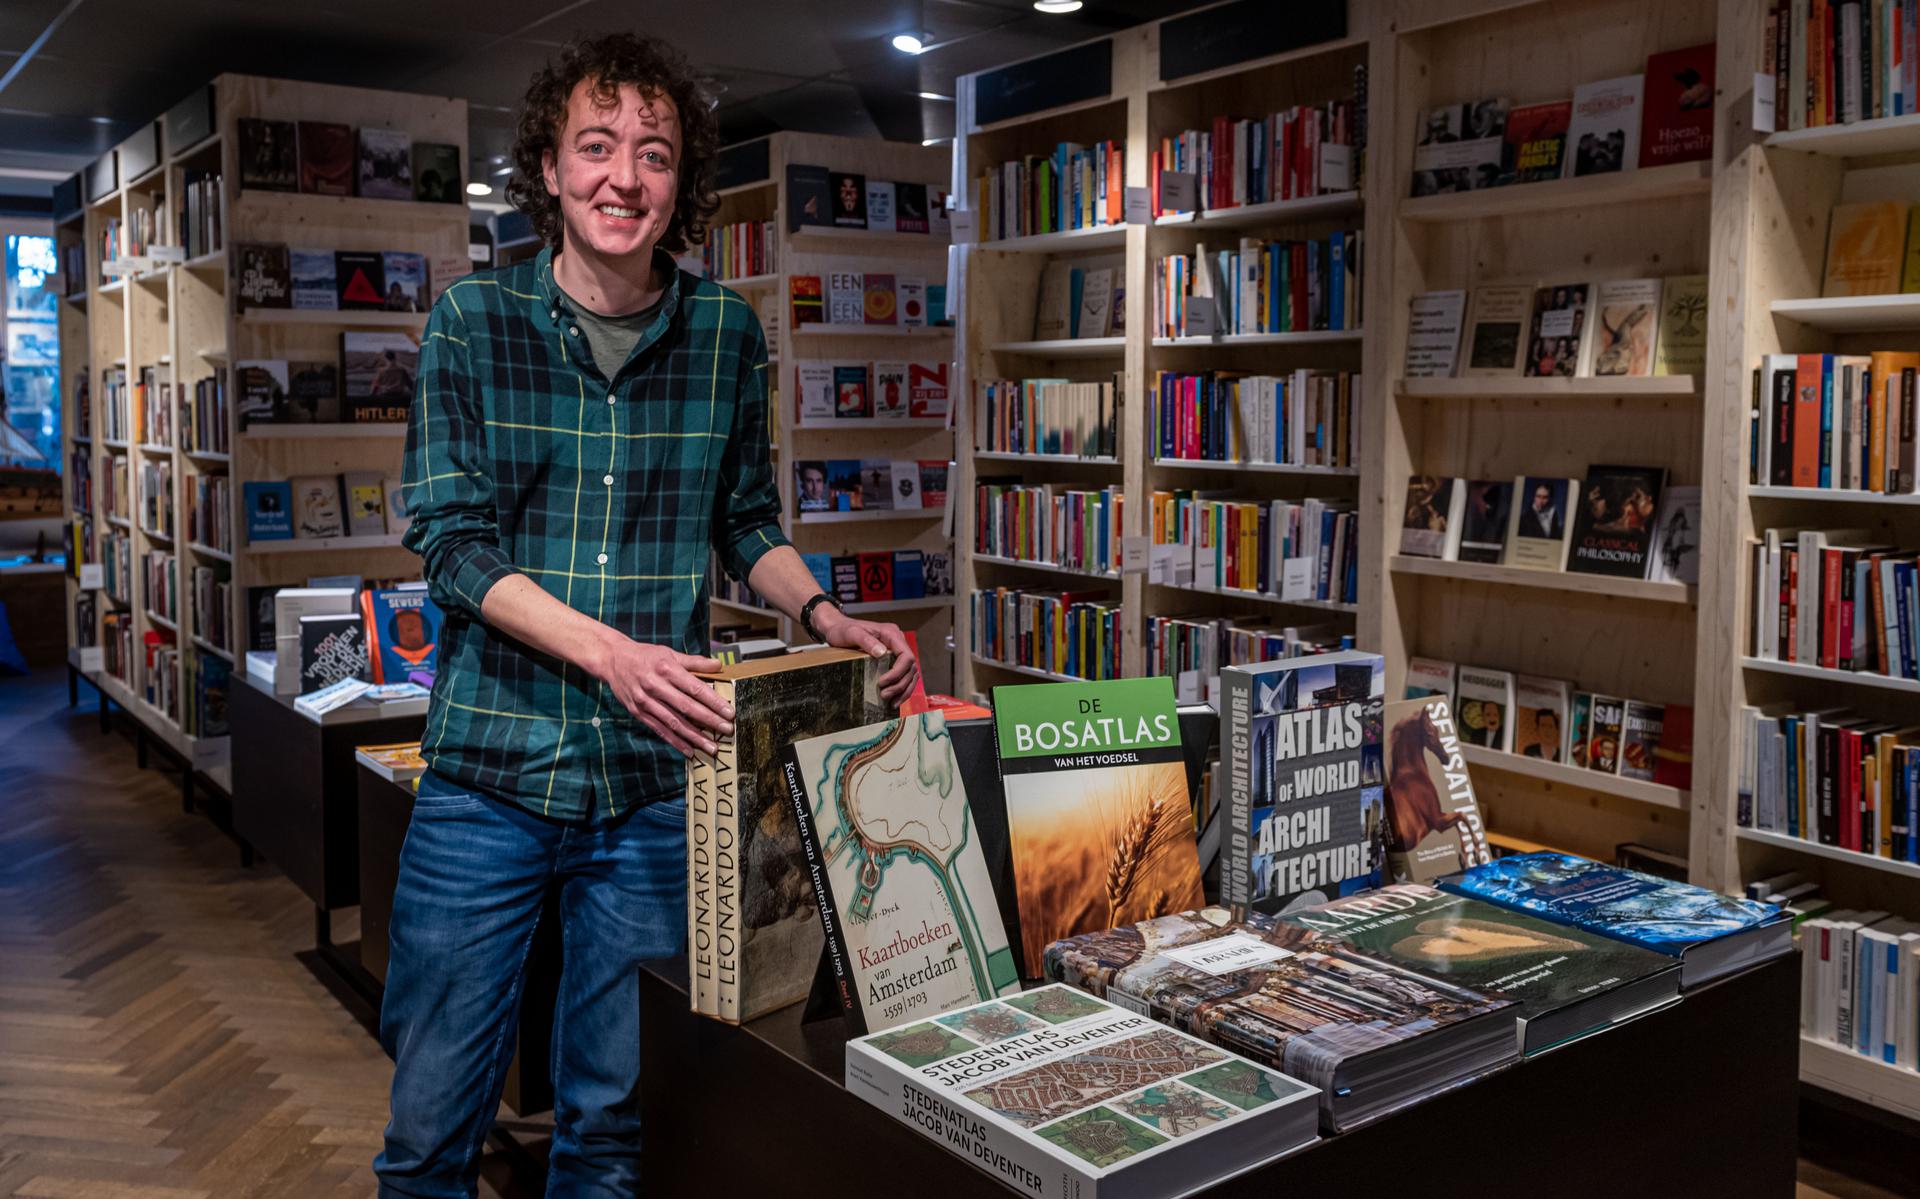 aardolie Mogelijk rechtdoor Boekhandel Van der Velde in Groningen reserveert complete bovenverdieping  voor tweedehands boeken. 'Veel mensen vinden dat er genoeg boeken zijn' -  Dagblad van het Noorden